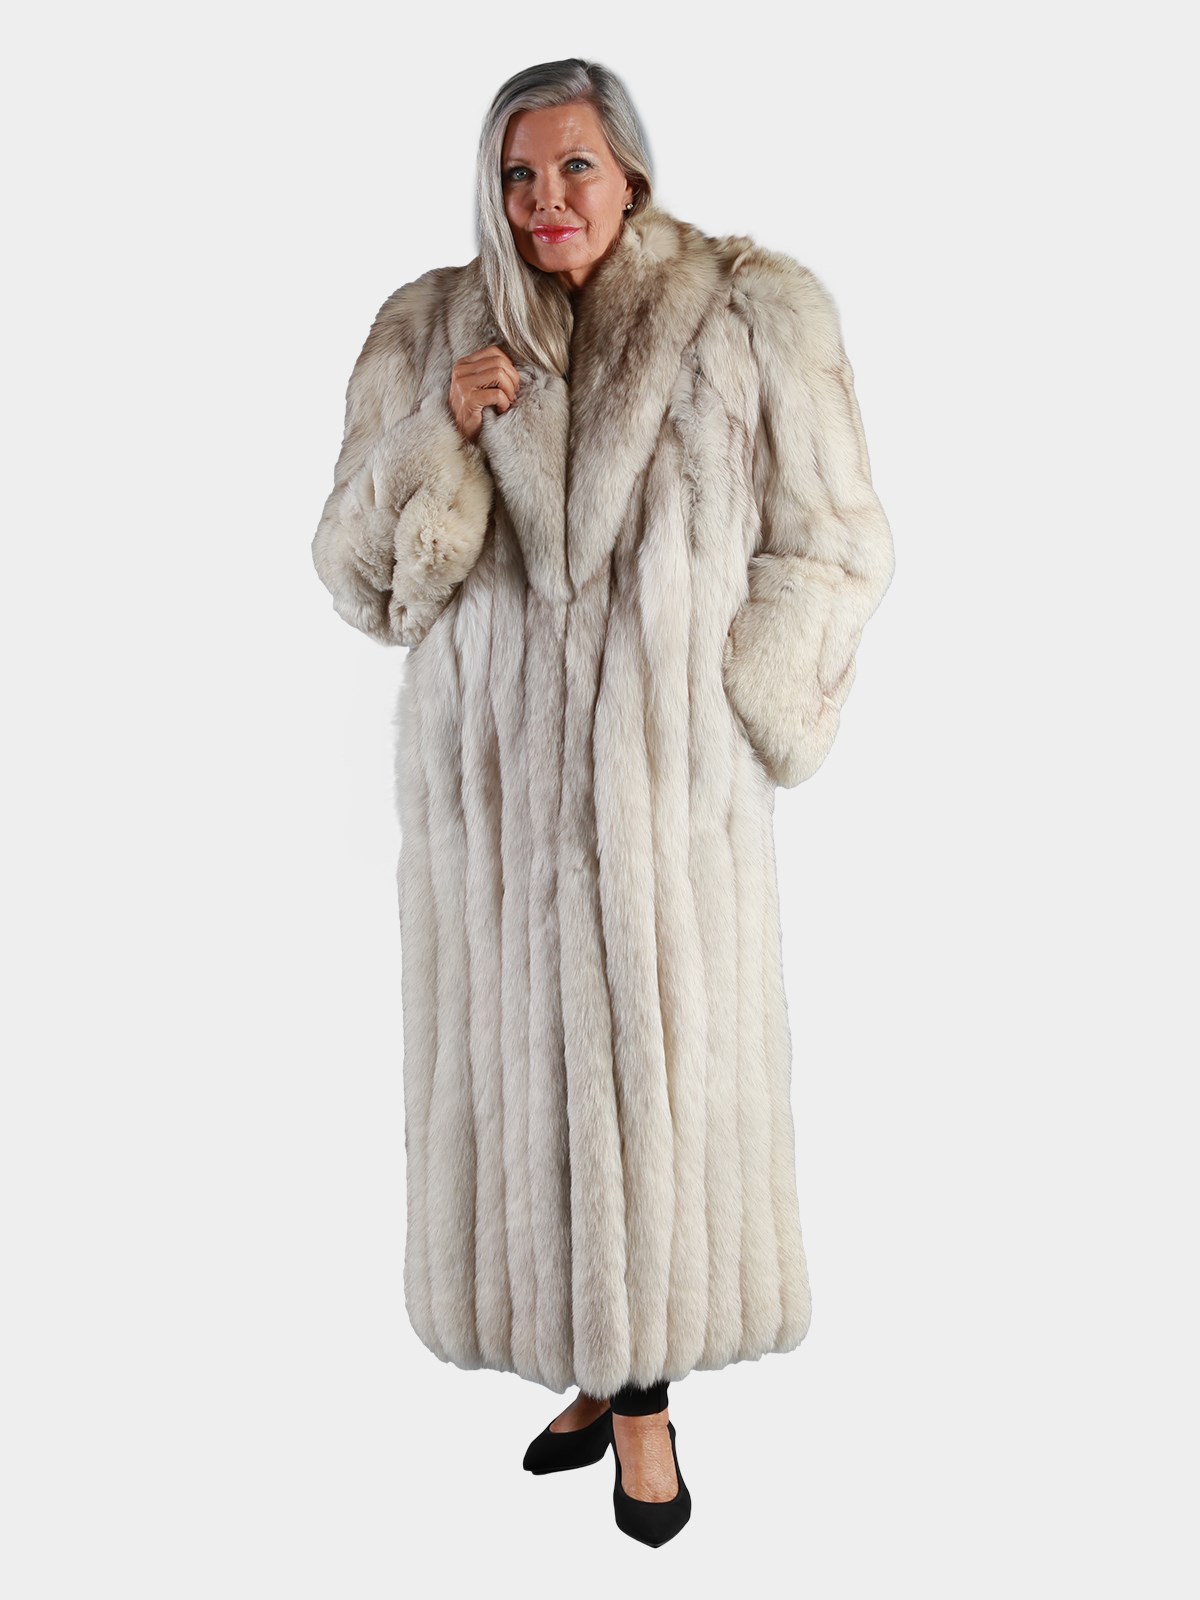 Woman's Natural Blue Fox Fur Coat